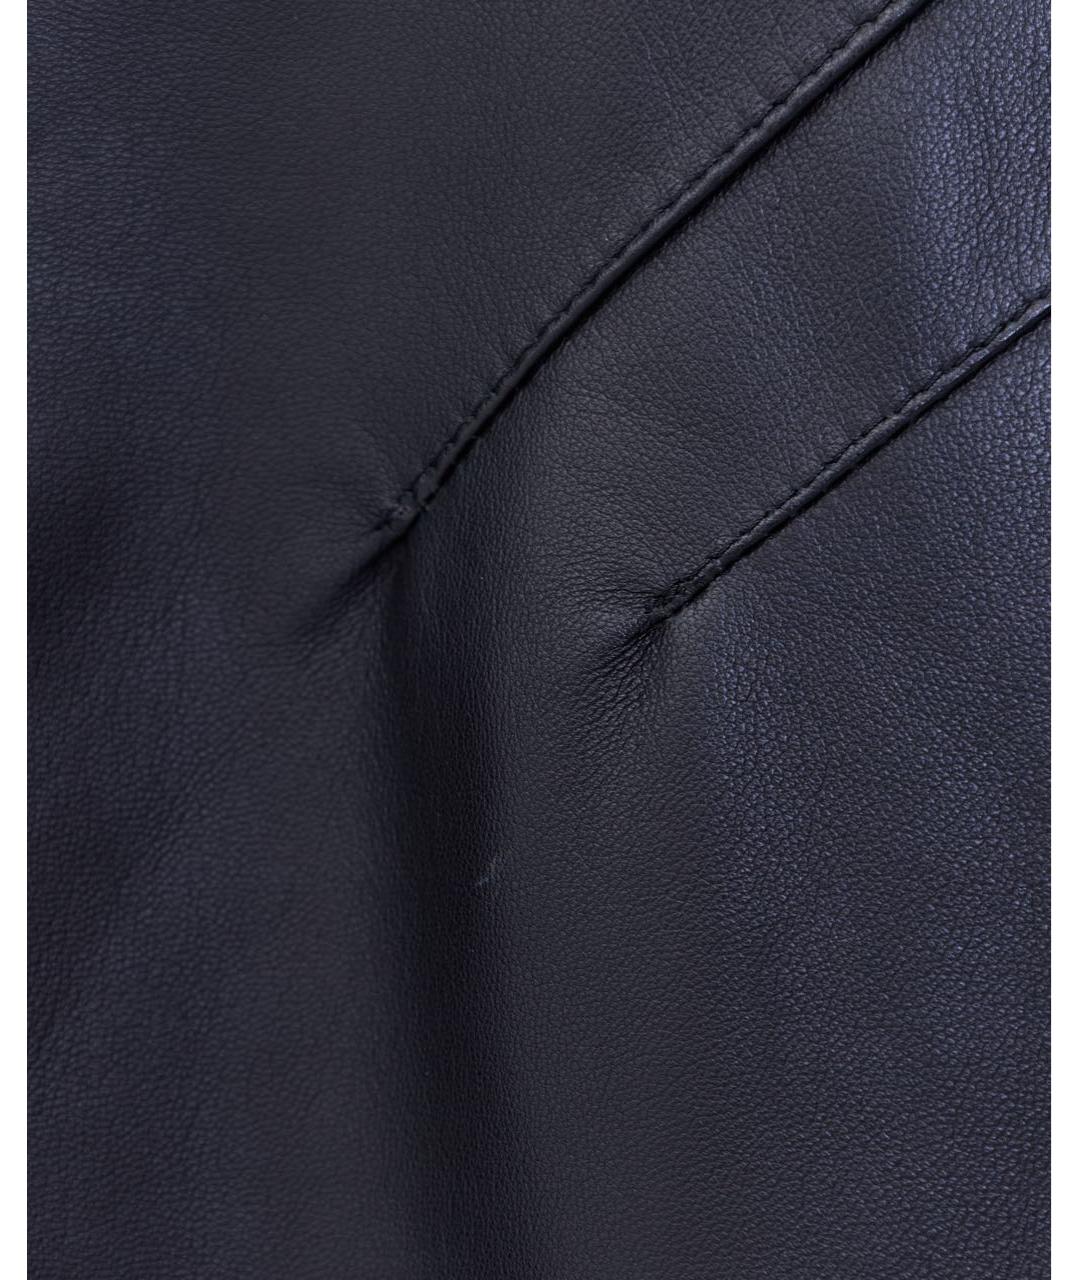 MANOKHI Черный кожаный сарафан, фото 6